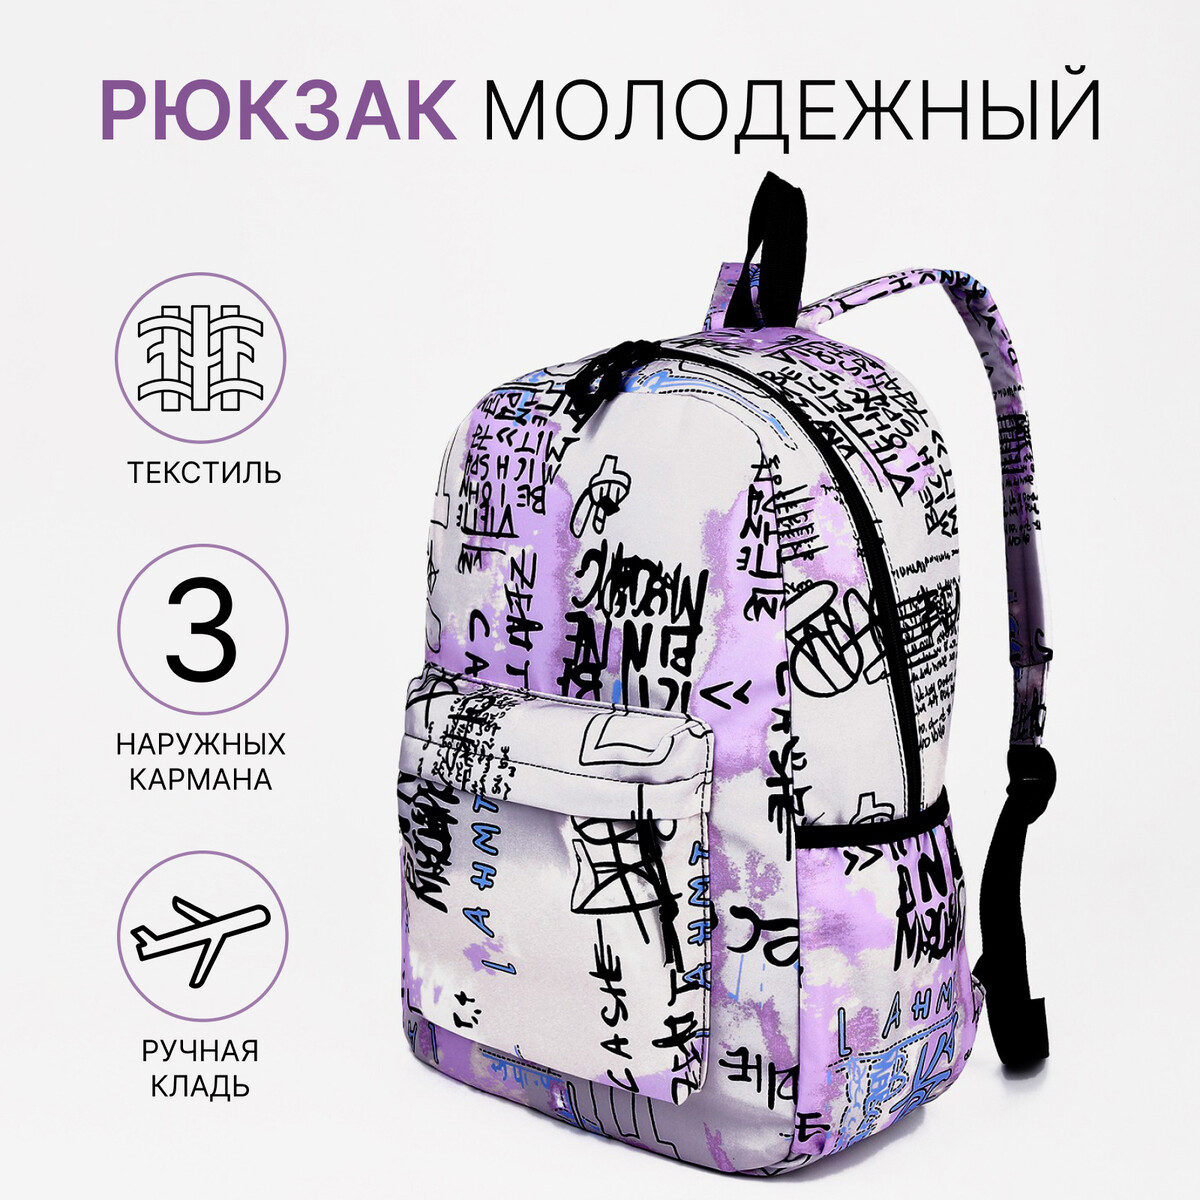 Рюкзак молодежный из текстиля на молнии, 3 кармана, цвет сиреневый